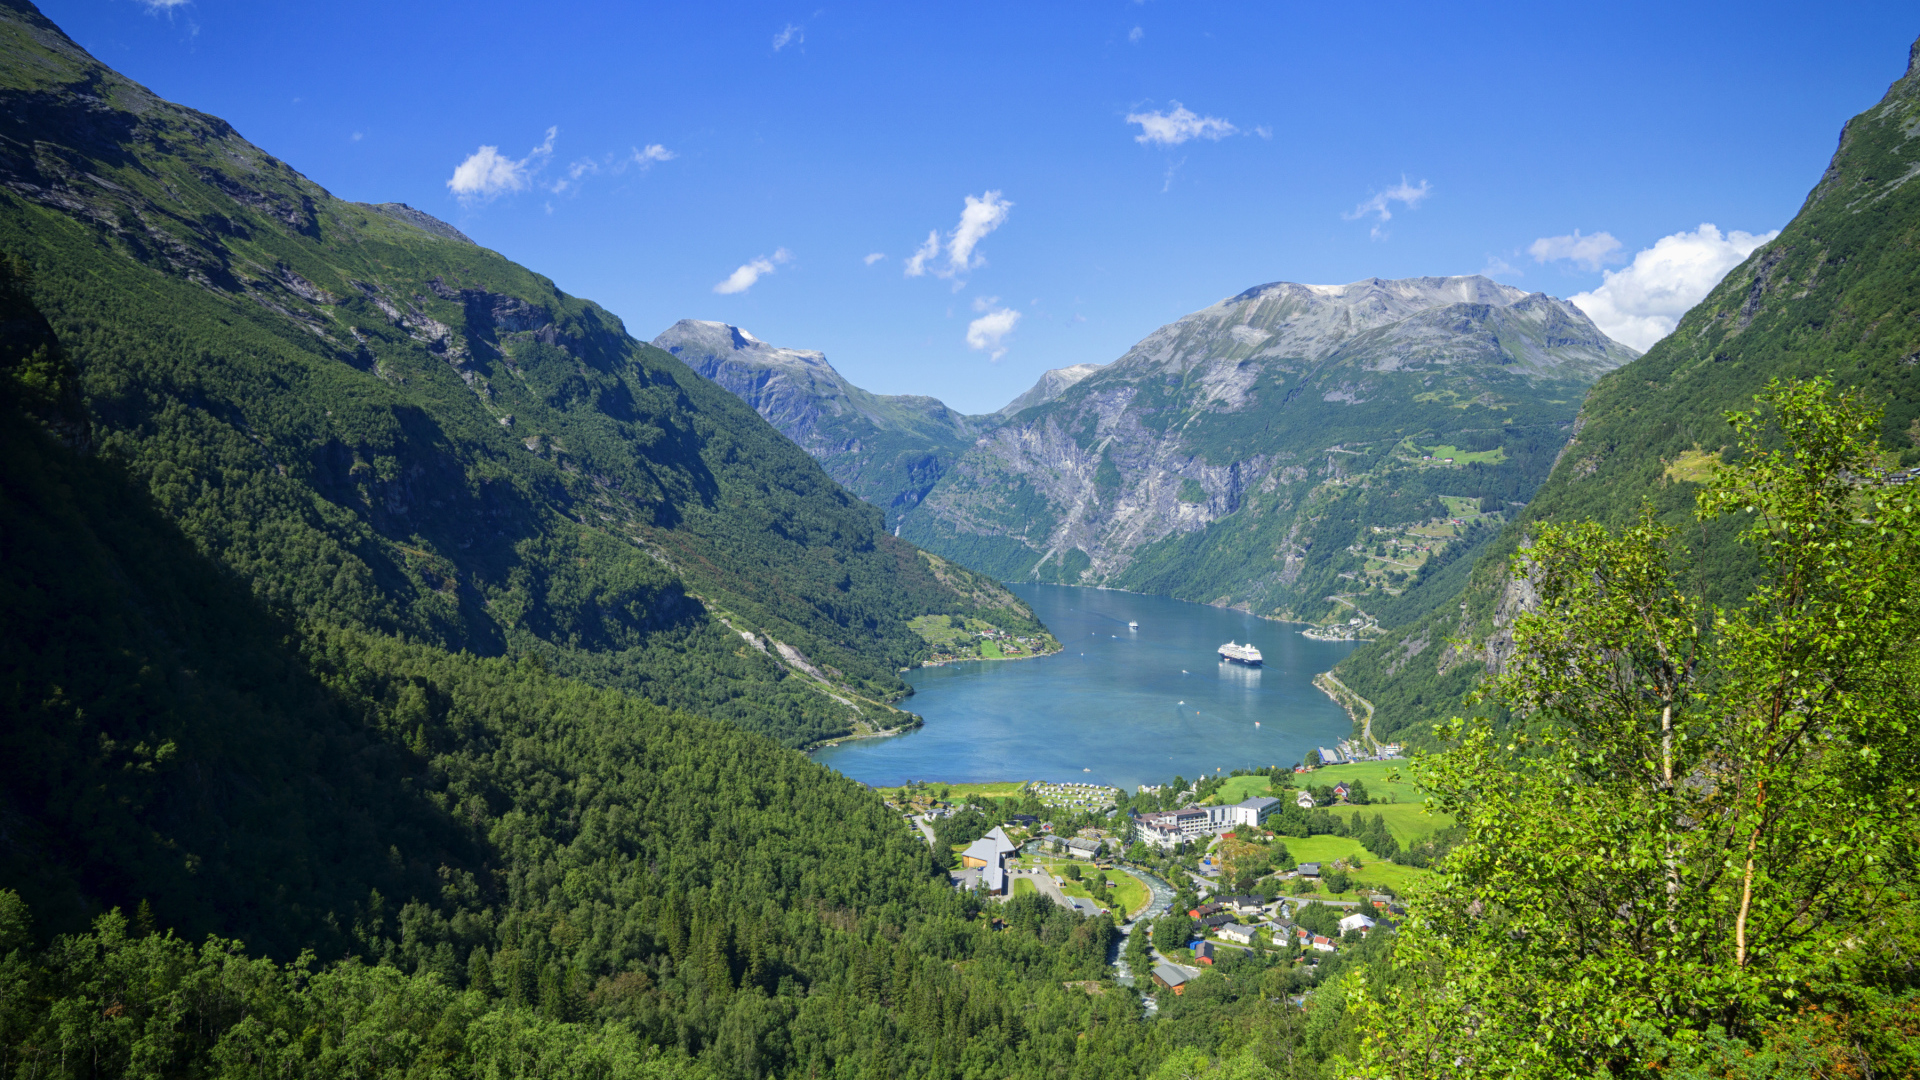 Норвежский фьорд в покрытых зеленью горах 